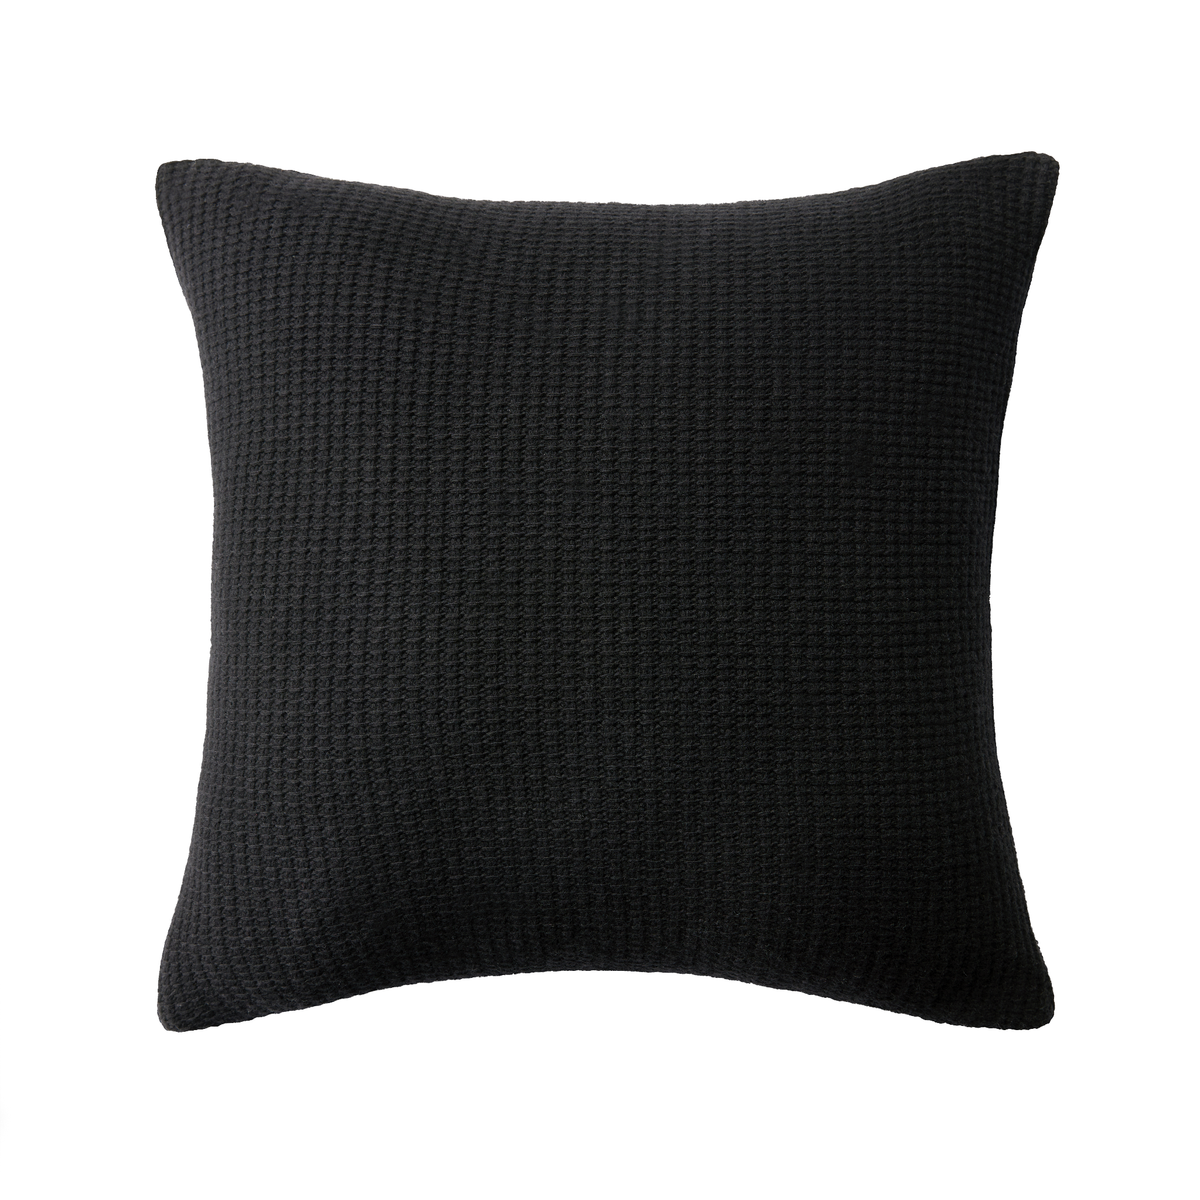 Decorative Pillow of Sferra Pettra Collection in Black Color